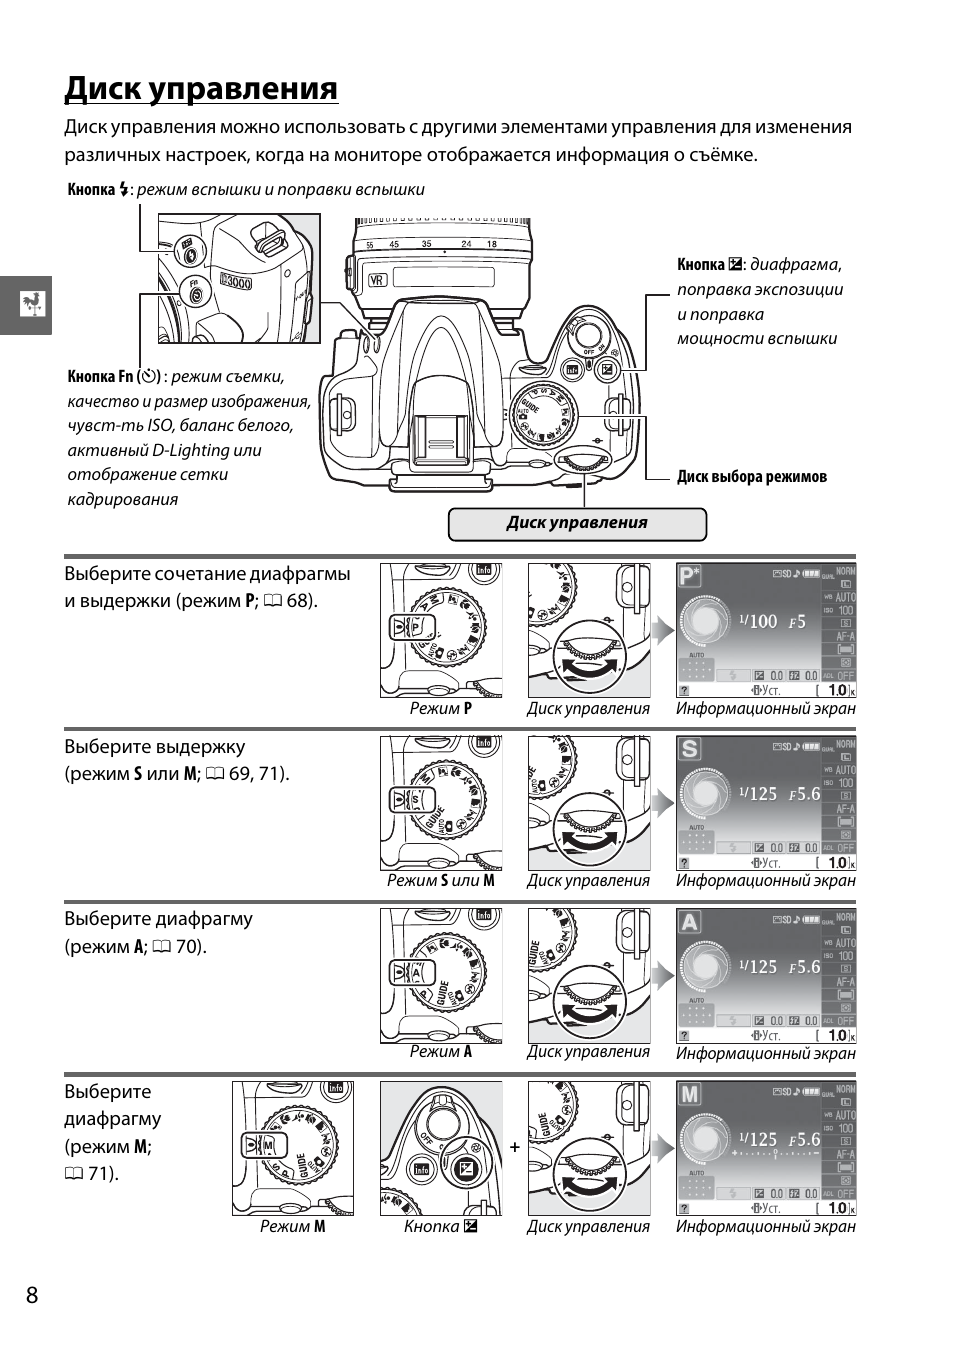 Диск управления | Инструкция по эксплуатации Nikon D3000 | Страница 26 / 216